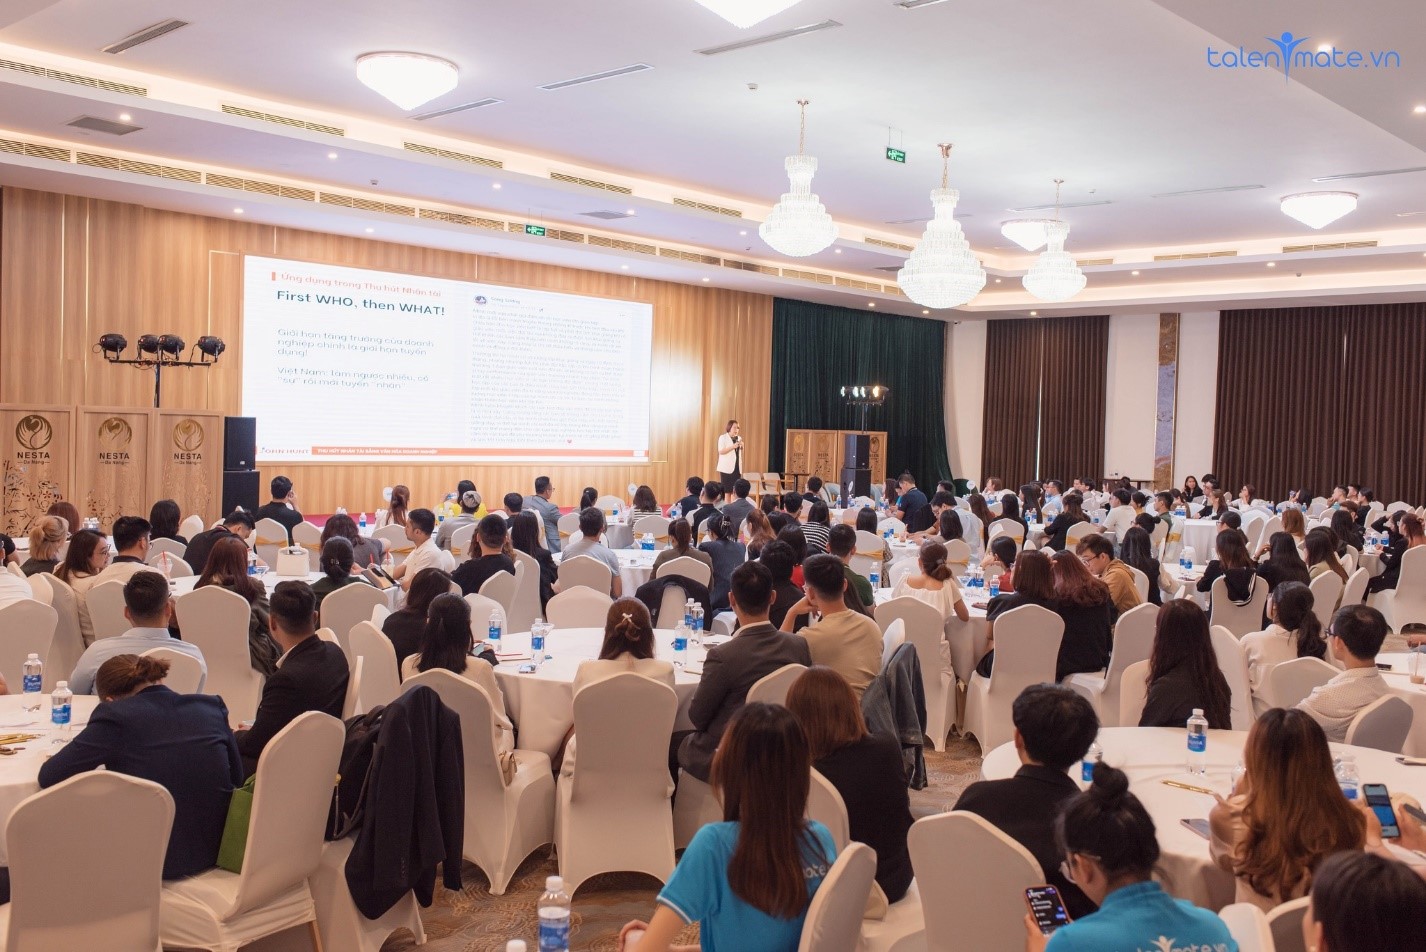 Talentmate ra mắt dự án cộng đồng “SMEs Summit” – nâng tầm doanh trí cho doanh nghiệp SMEs tại Việt Nam - 4